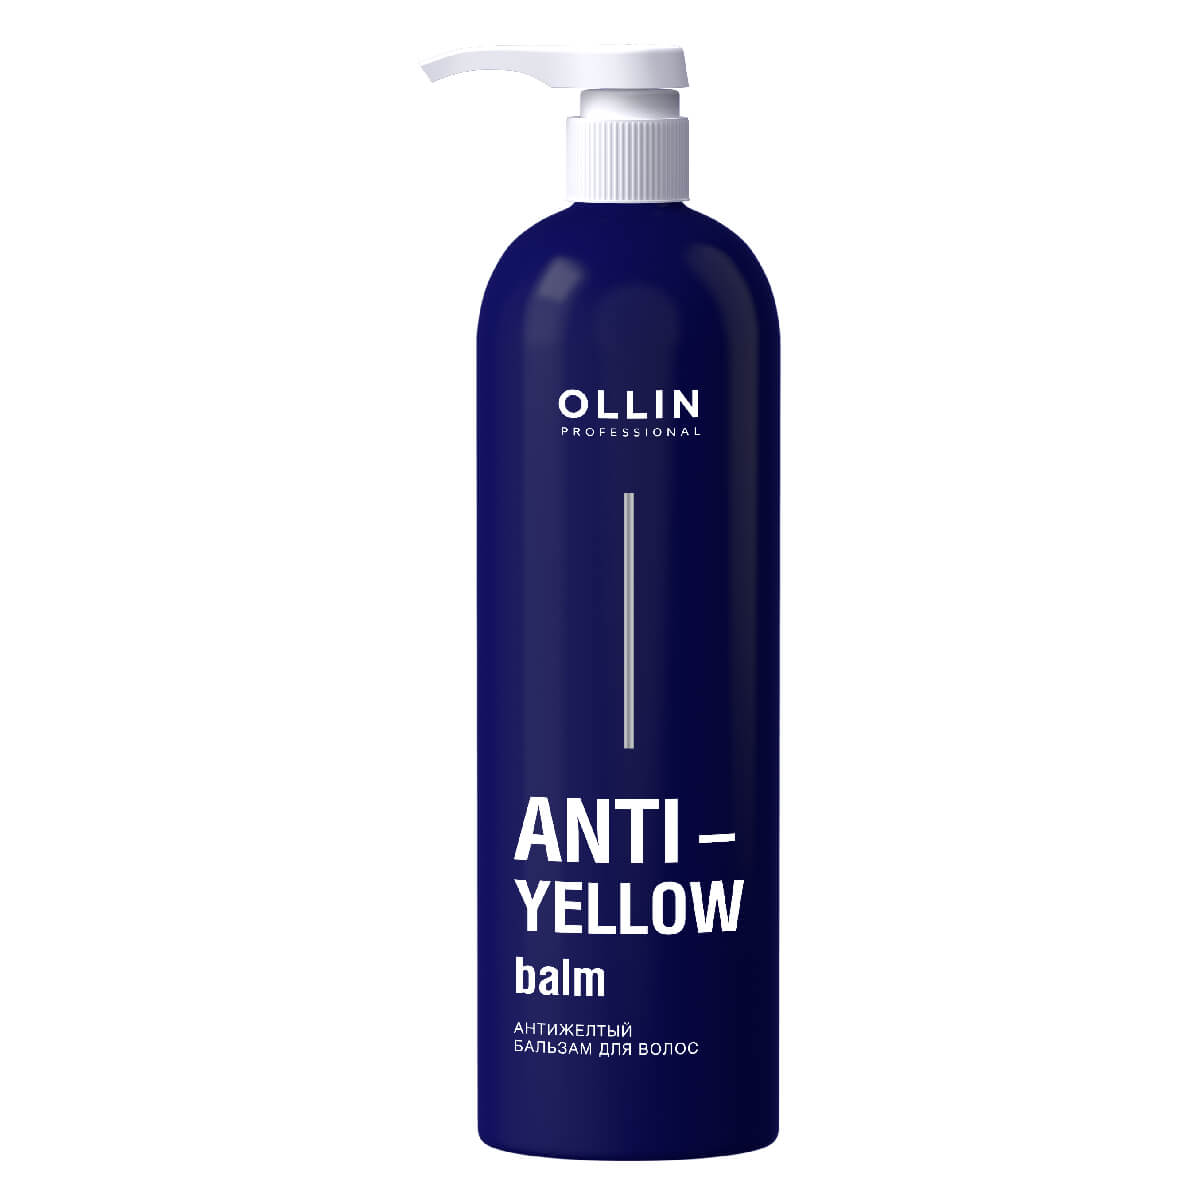 ANTI-YELLOW Антижелтый бальзам для волос 250мл, OLLIN - фото 1